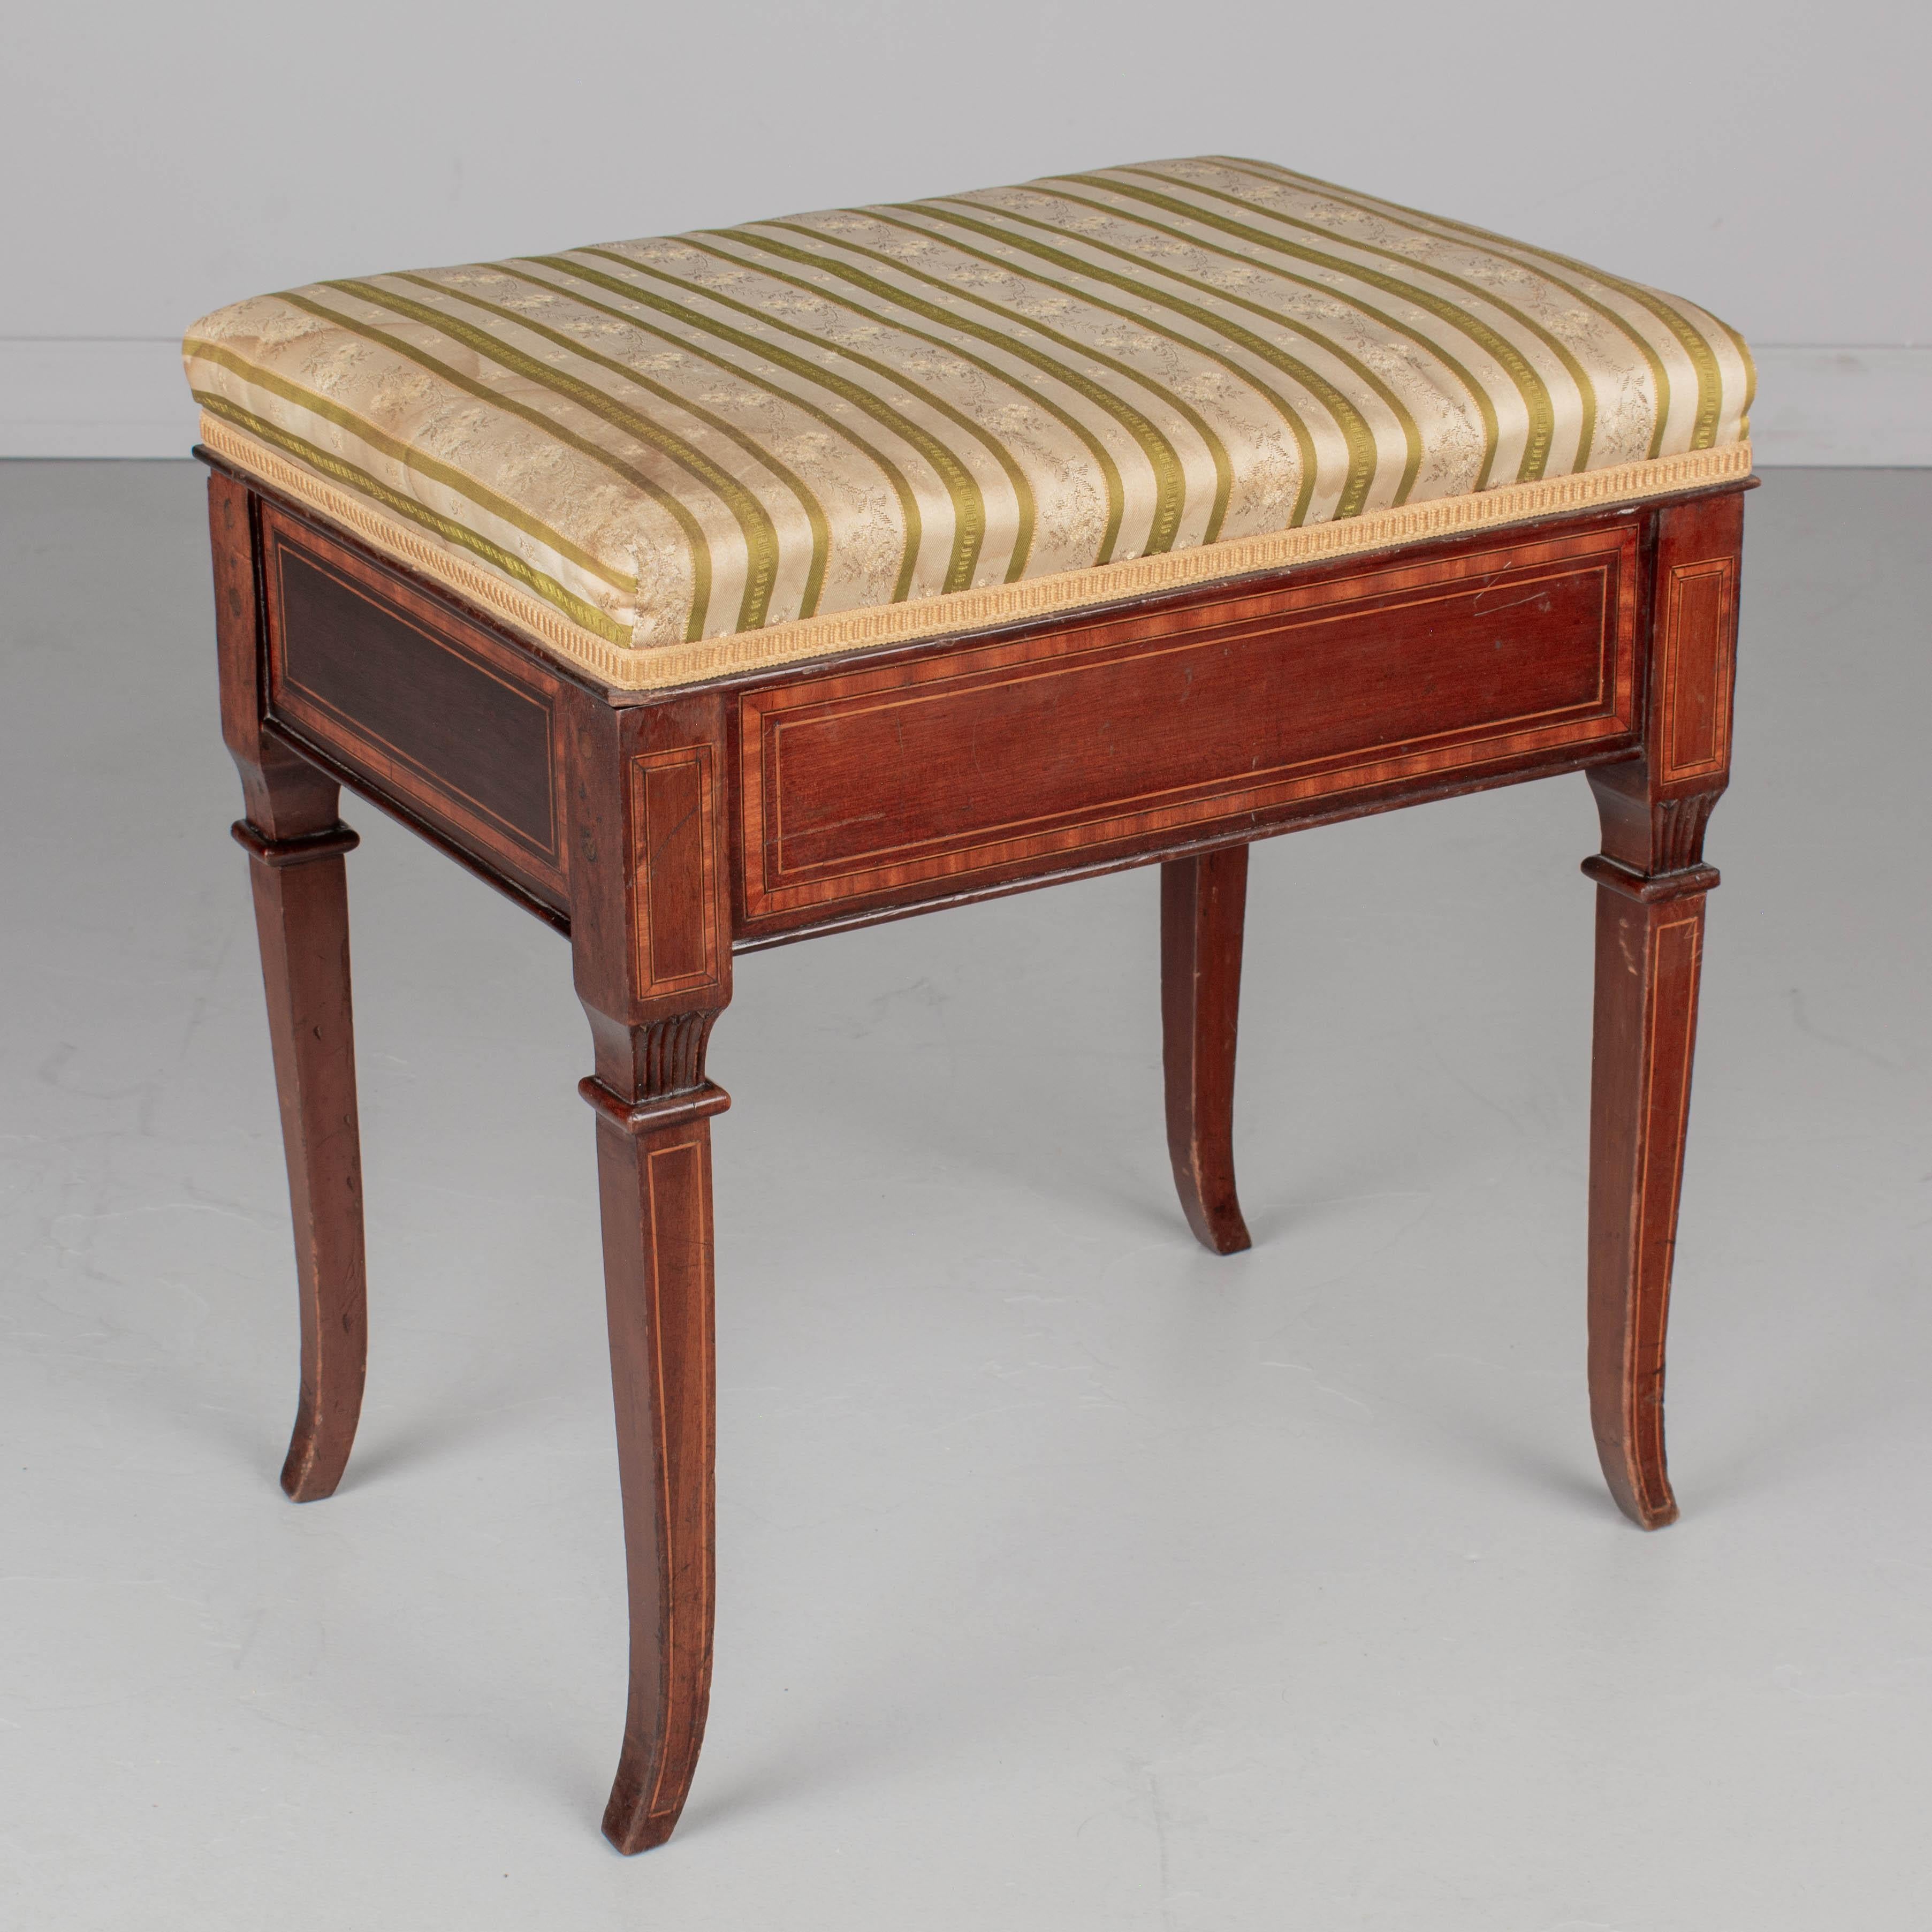 Französische Klavierbank aus Mahagoni im Louis XVI-Stil mit gepolsterter Sitzfläche. Hergestellt aus massivem Mahagoni mit Intarsien. Der Sitz lässt sich aufklappen und bietet Platz für Notenblätter. Der Original-Seidenstoff ist leicht verschmutzt.